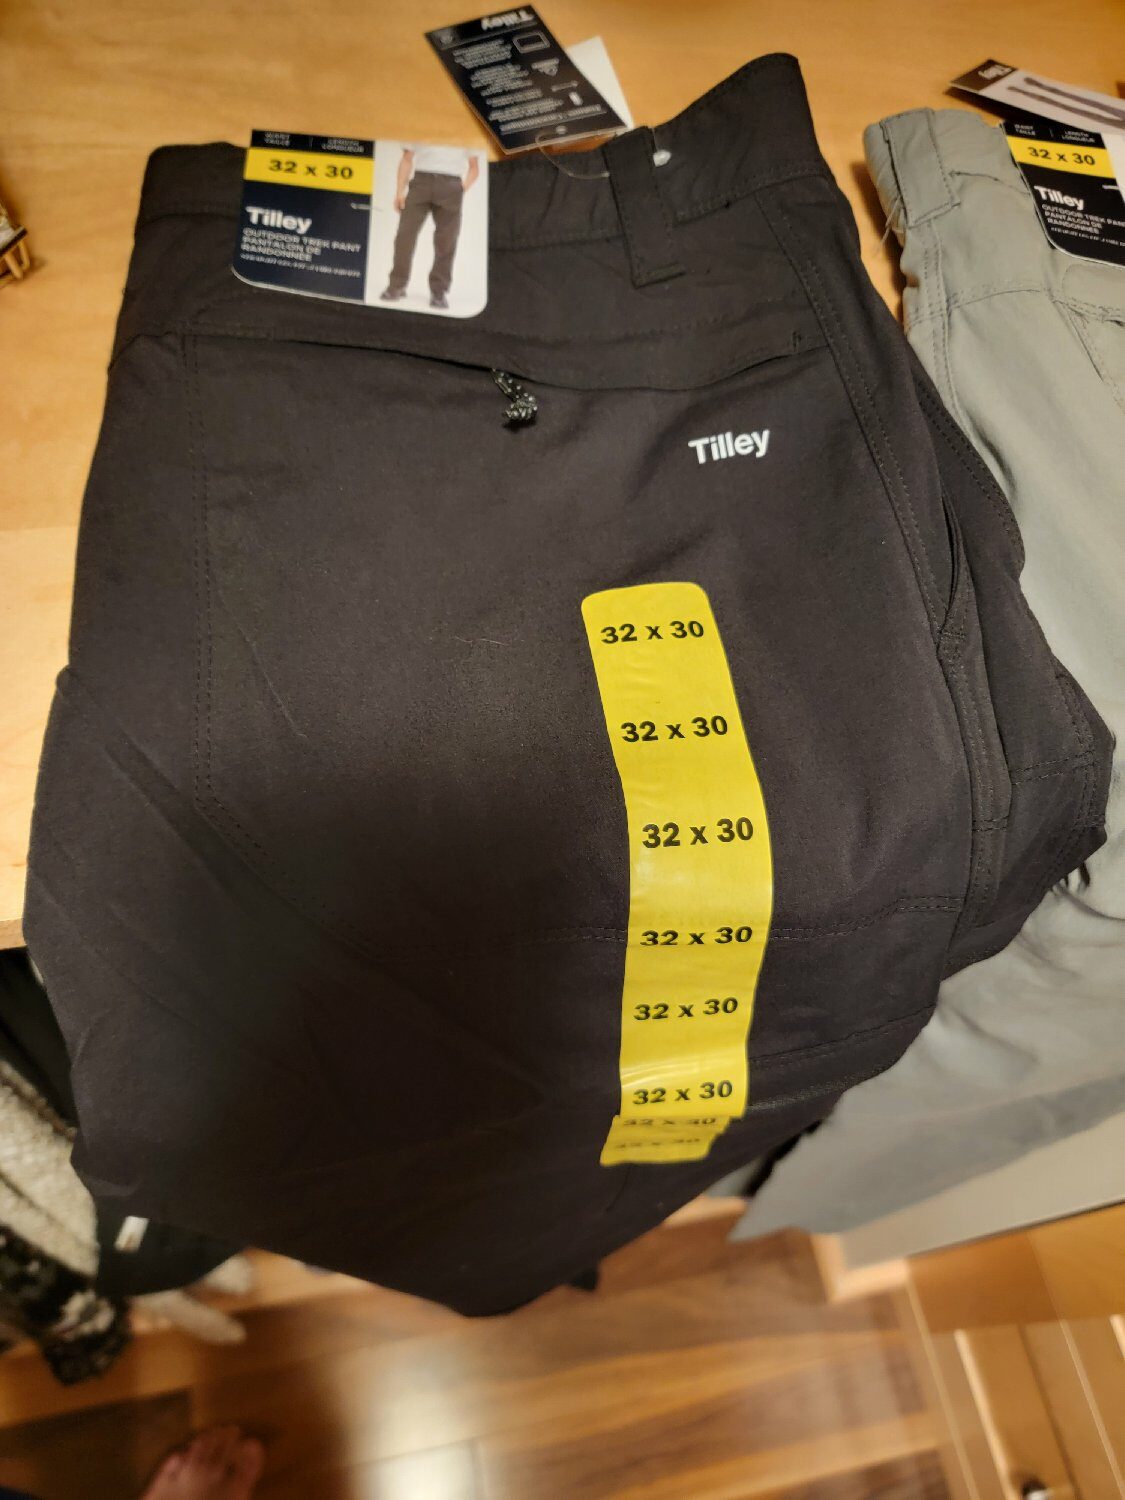 Costco] Tilley Outdoor Trek Pants - $18.99 in-store (sale price online  $22.99, regular price $28.99) - RedFlagDeals.com Forums